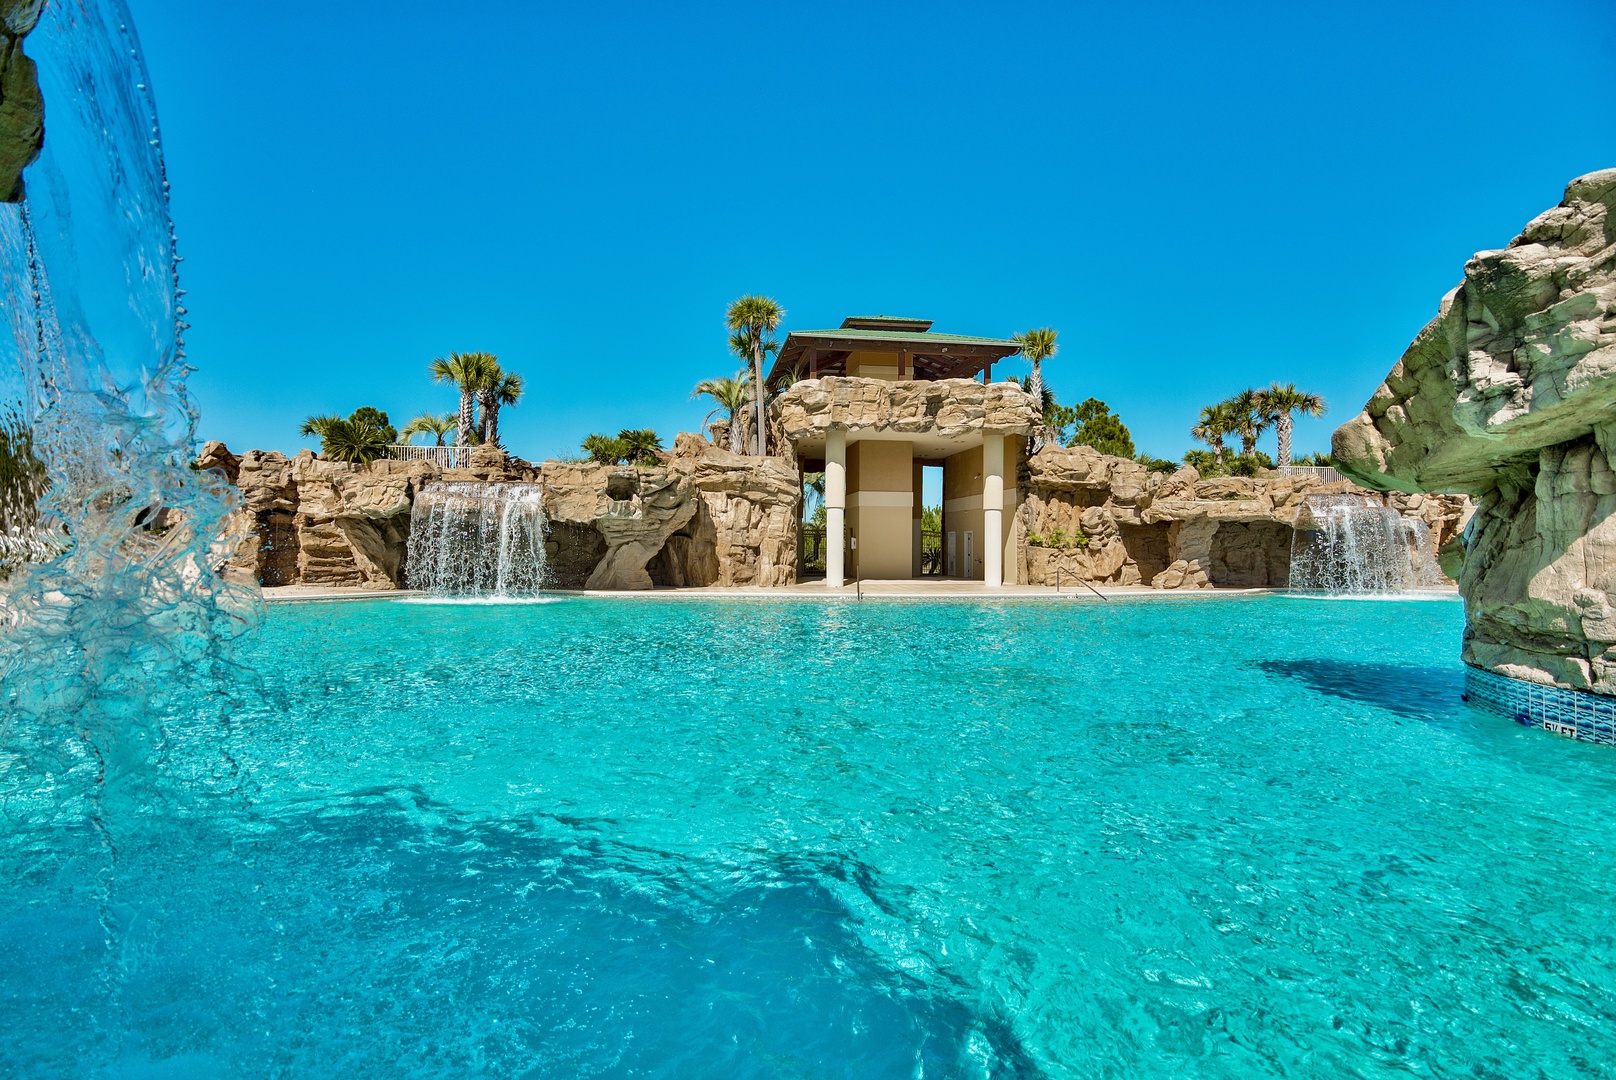 The amazing neighborhood pool with waterfalls and grottos!